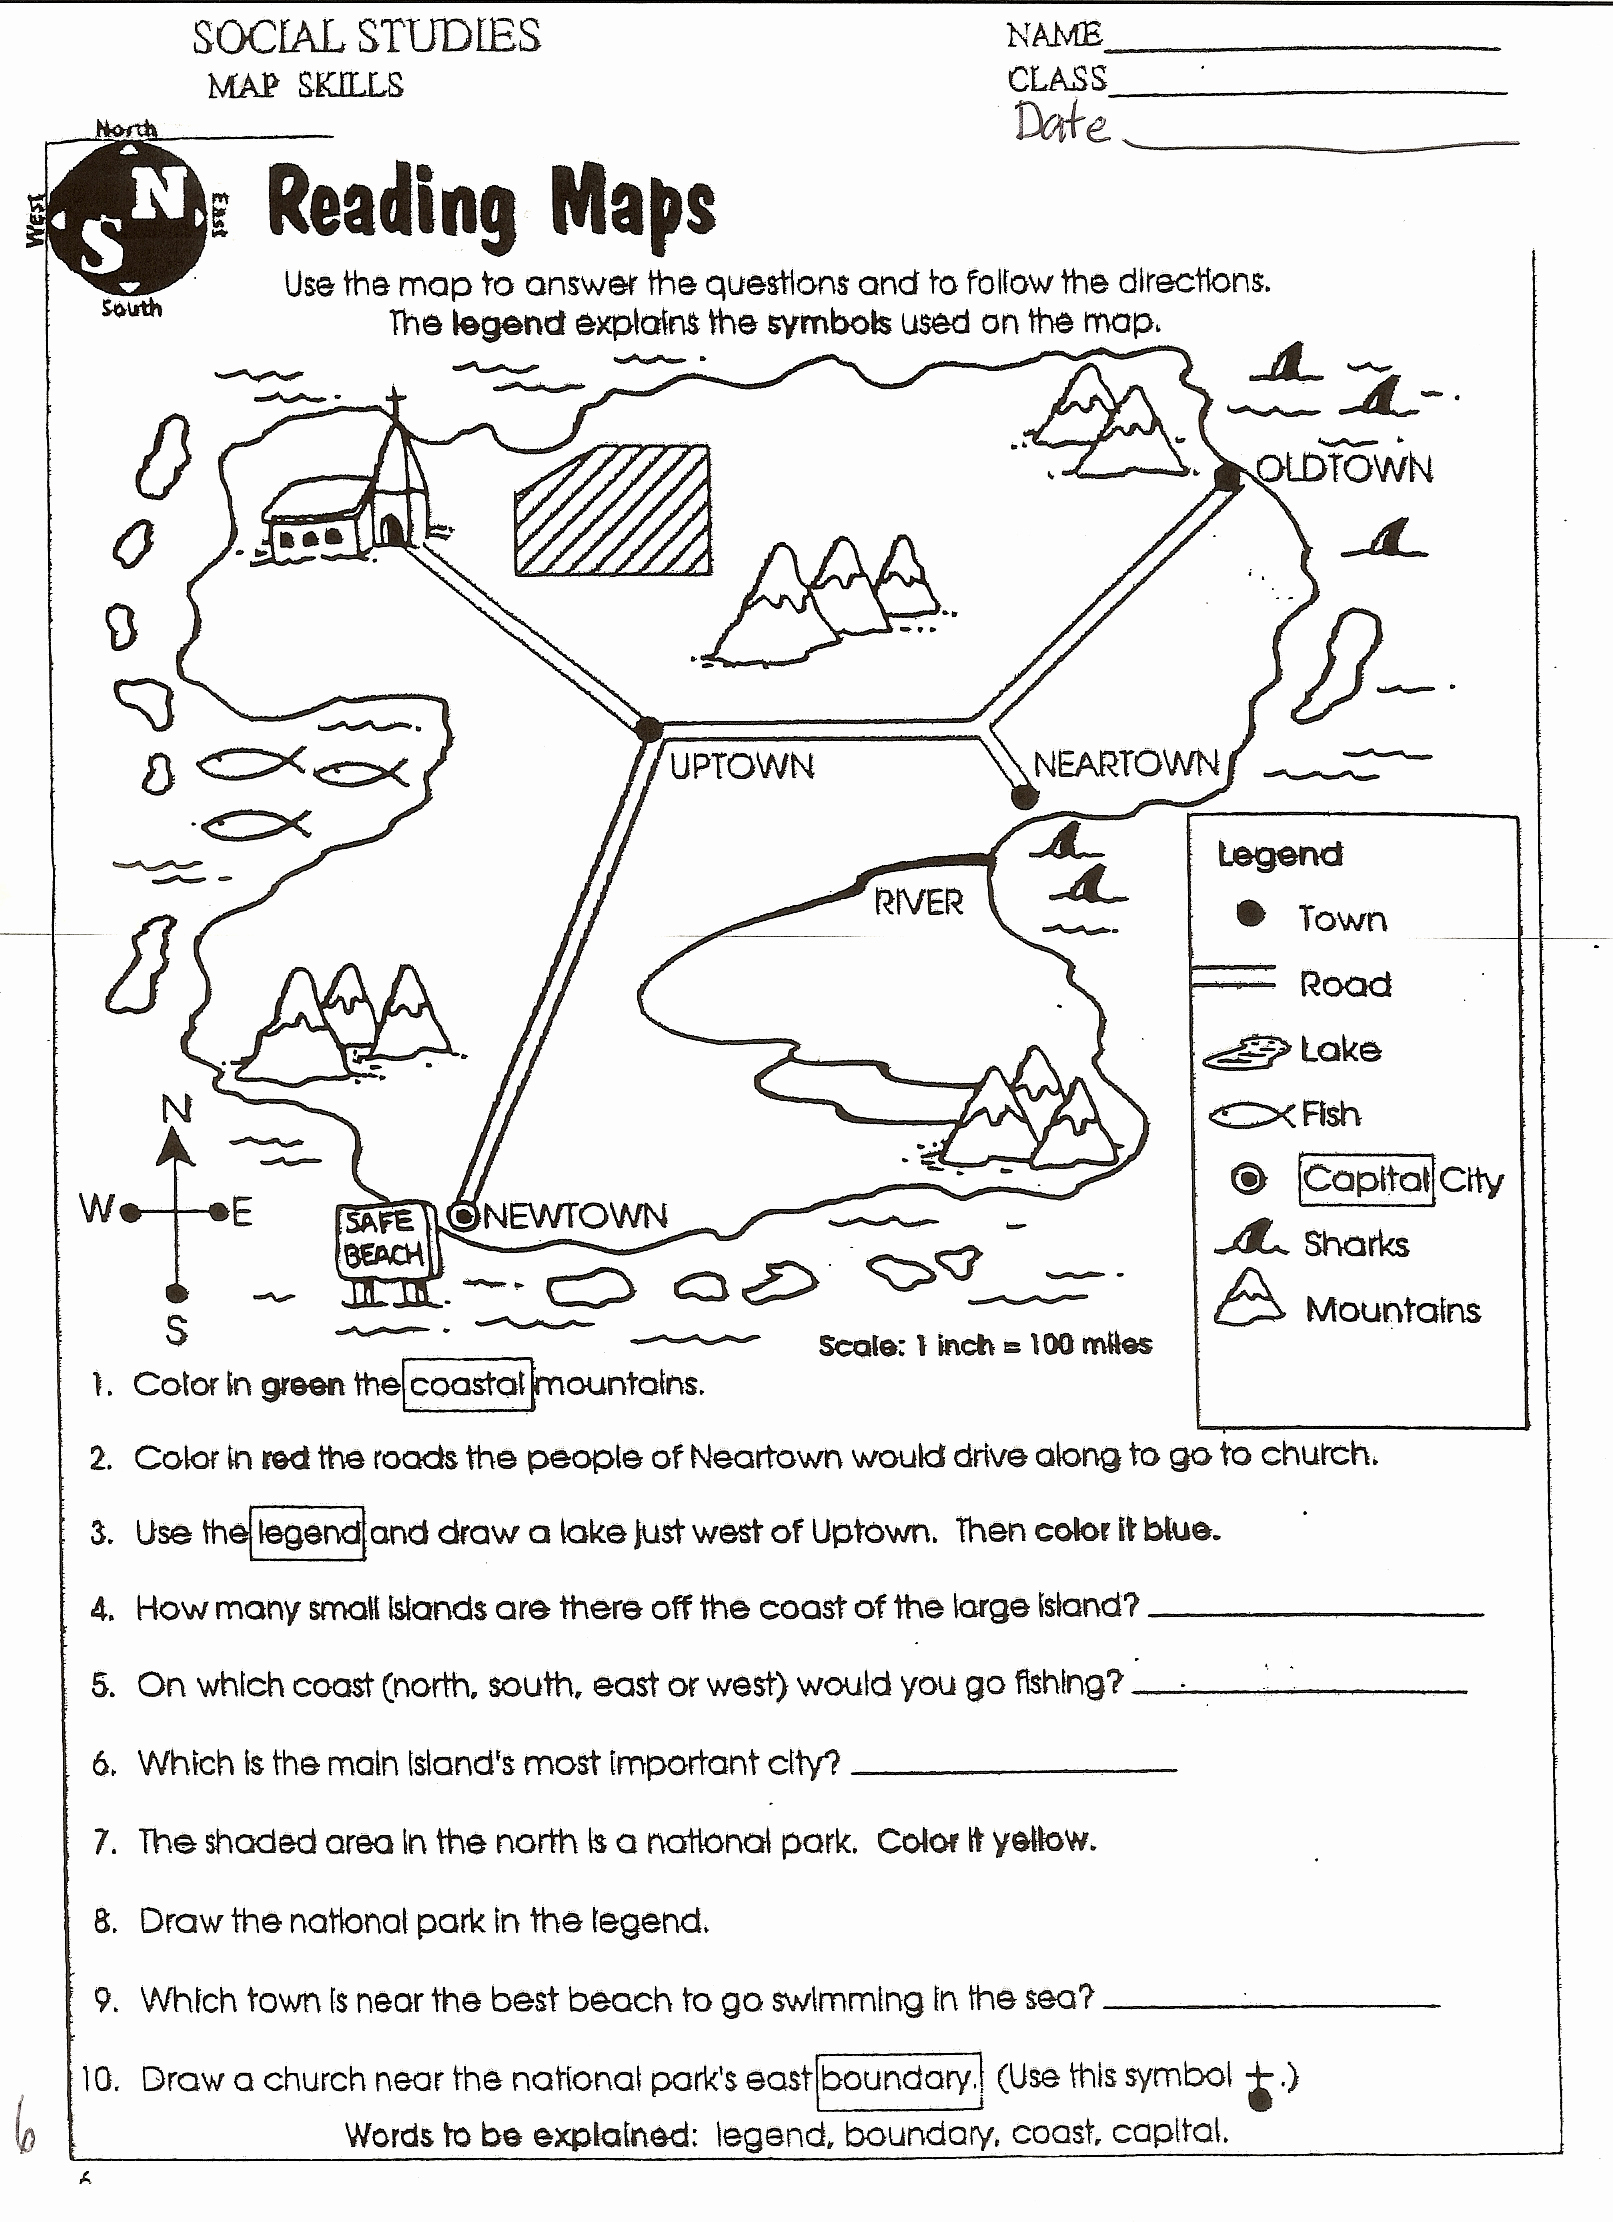 Social Studies Worksheet 3Rd Grade Lovely Kids Social Stu S Grade 1 | Grade 3 Social Studies Worksheets Printable